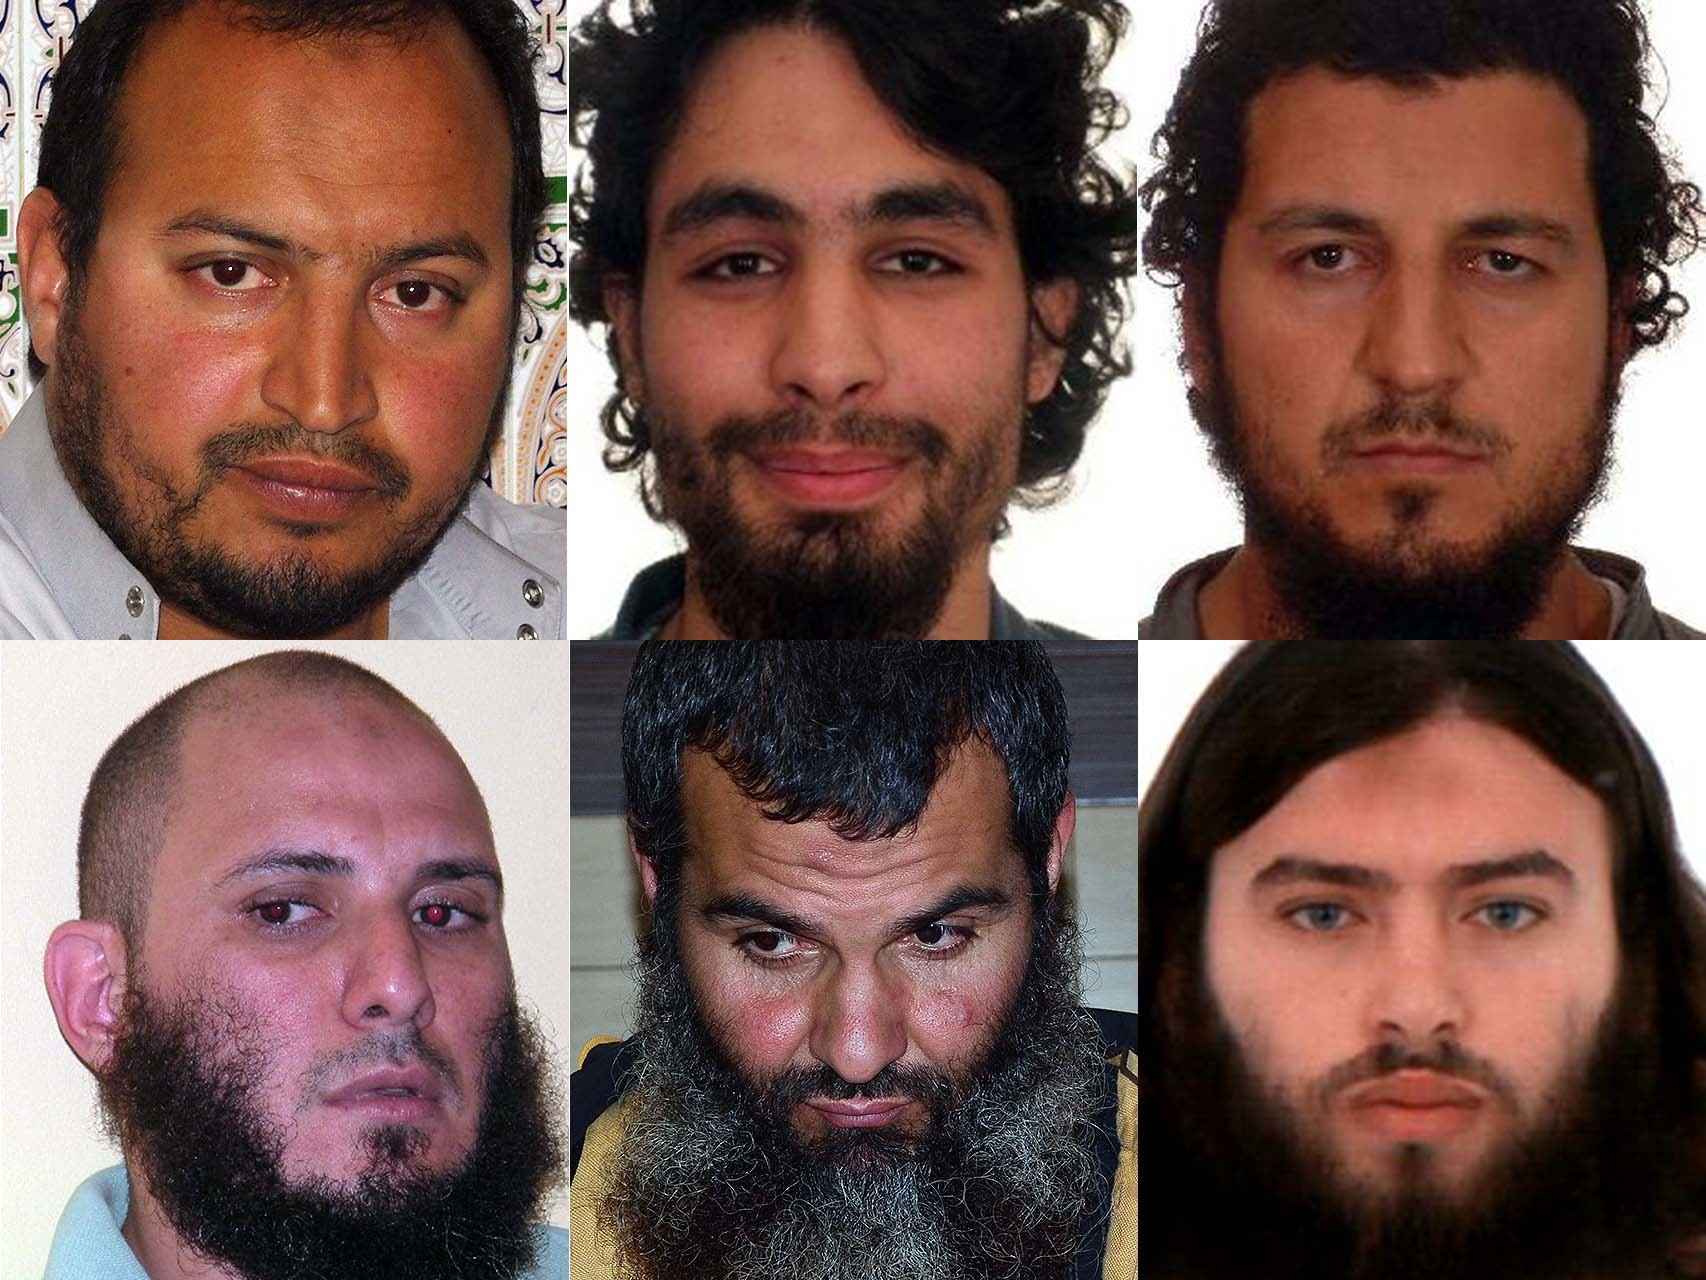 Seis de los detenidos, de izquierda a derecha: Baghdadi, Benali, Hamed, Dris, Al-lal Mohamed y Zizaou.